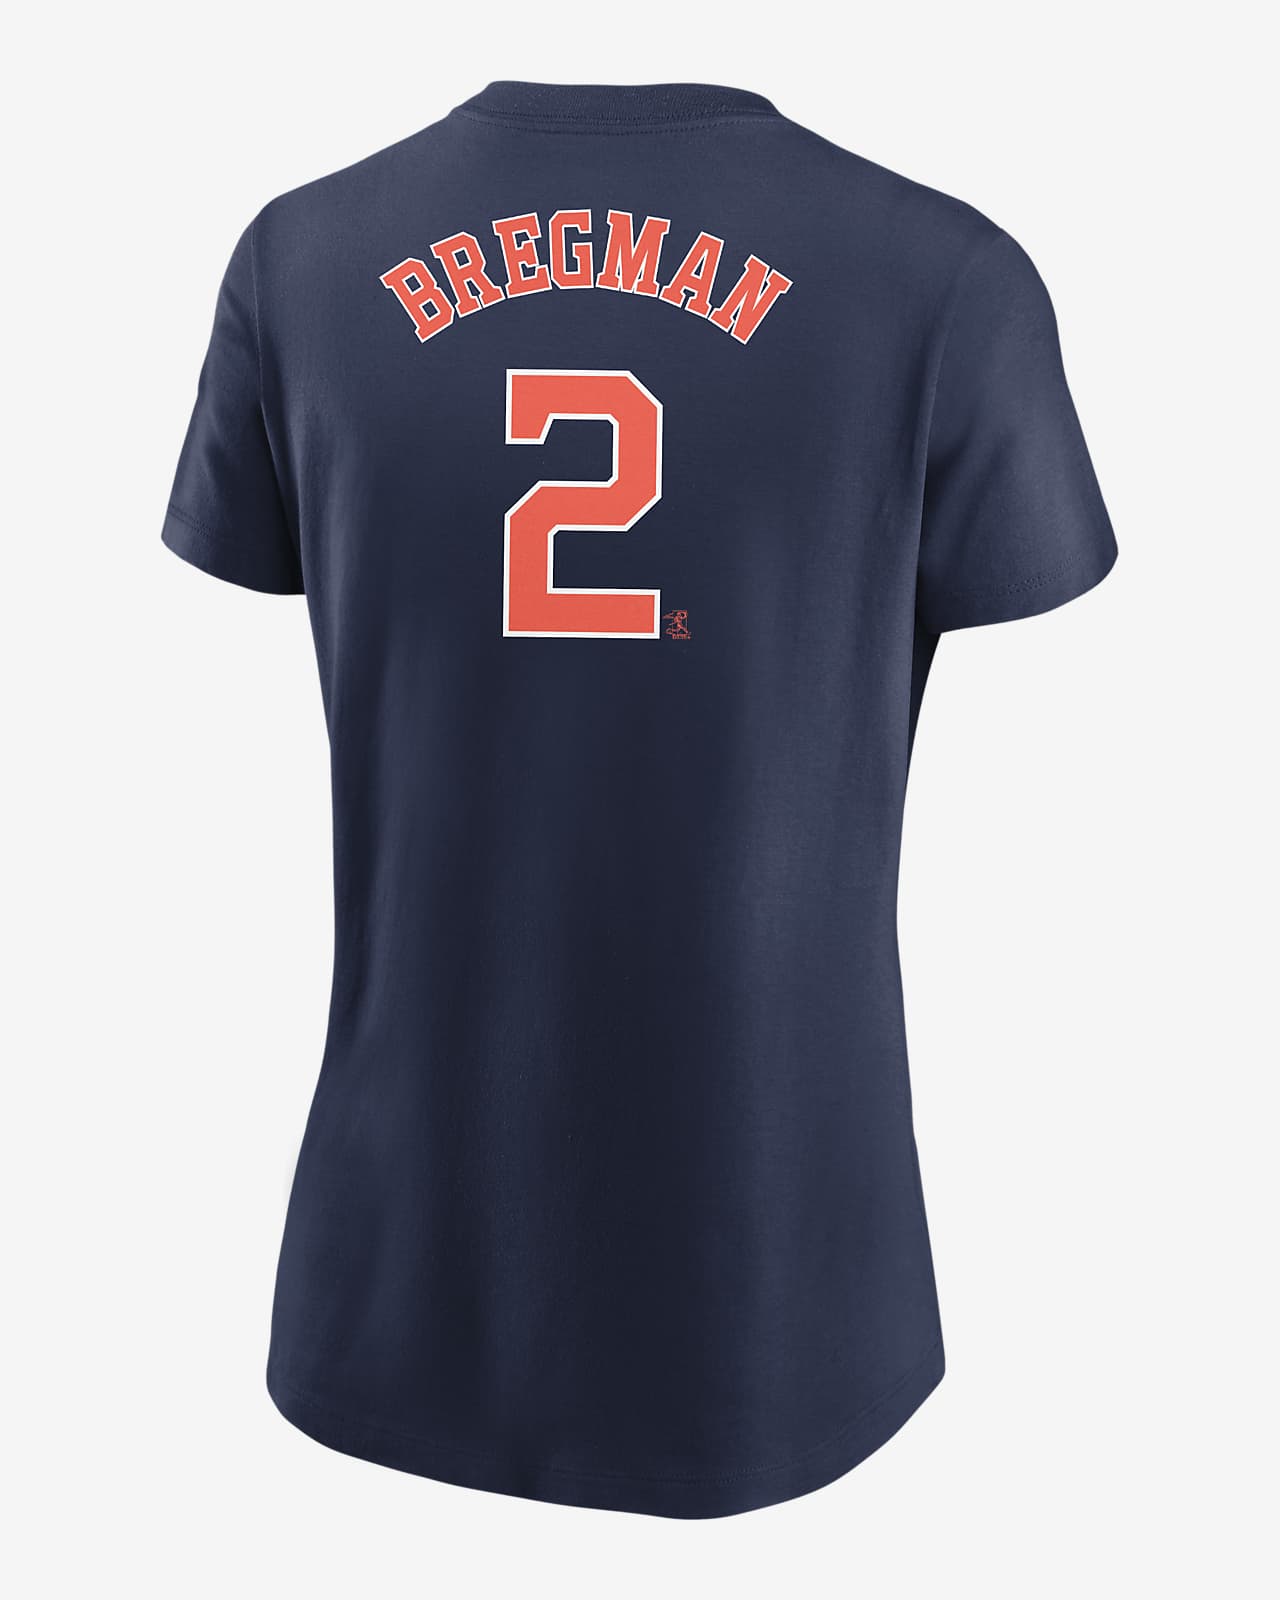 Official Alex Bregman Jersey, Alex Bregman Shirts, Baseball Apparel, Alex  Bregman Gear